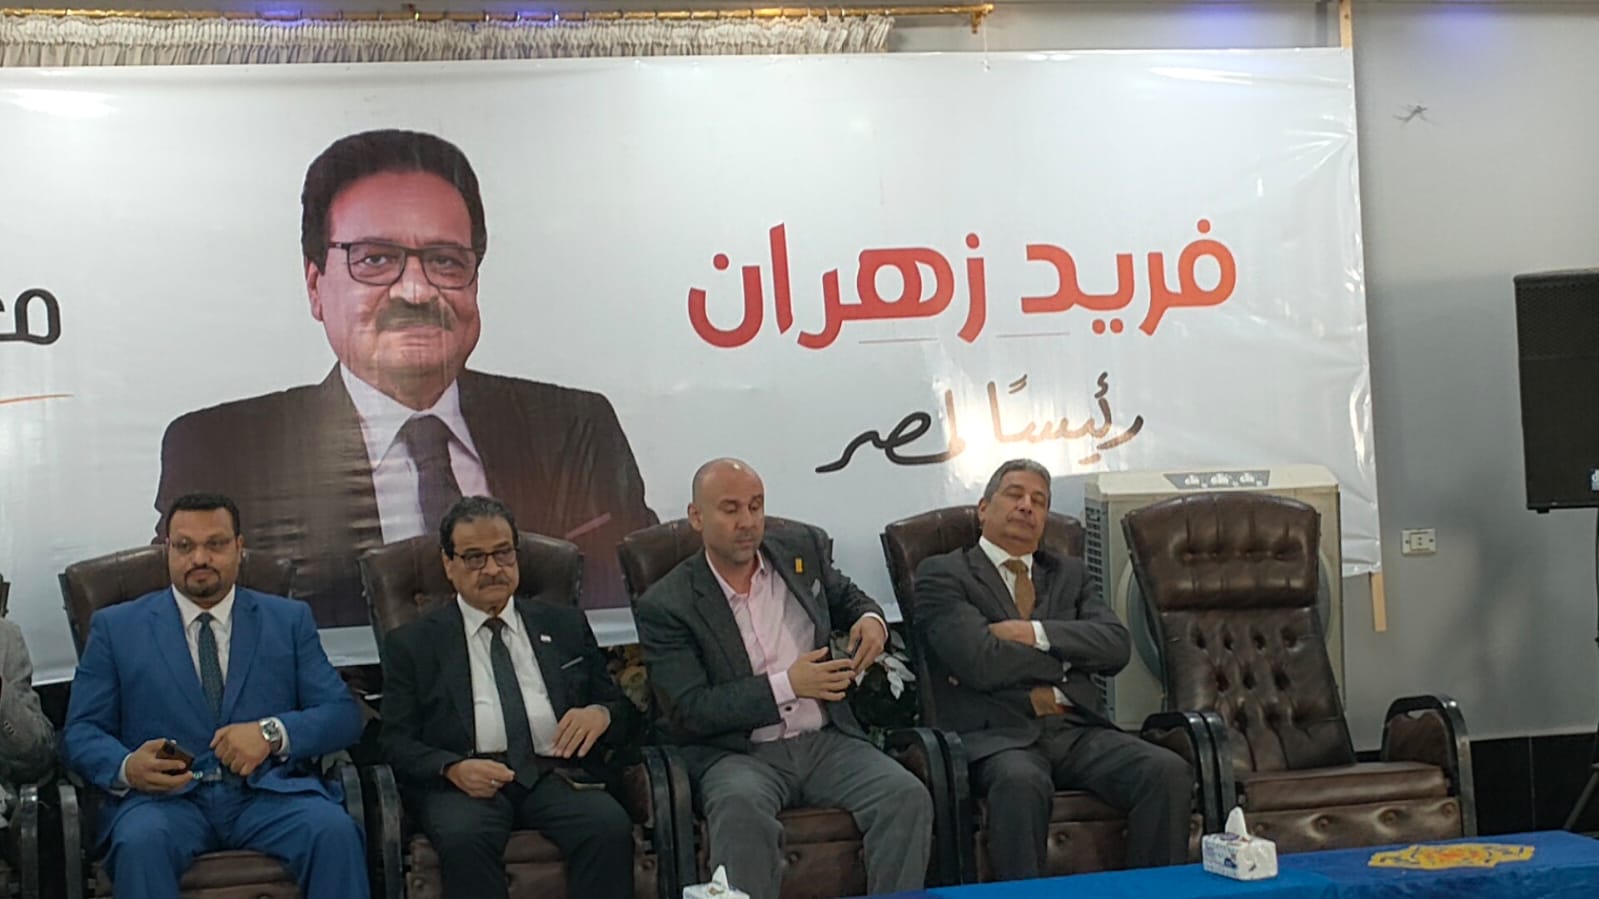  المؤتمر الإنتخابي للمرشح الرئاسي فريد زهران  (1)